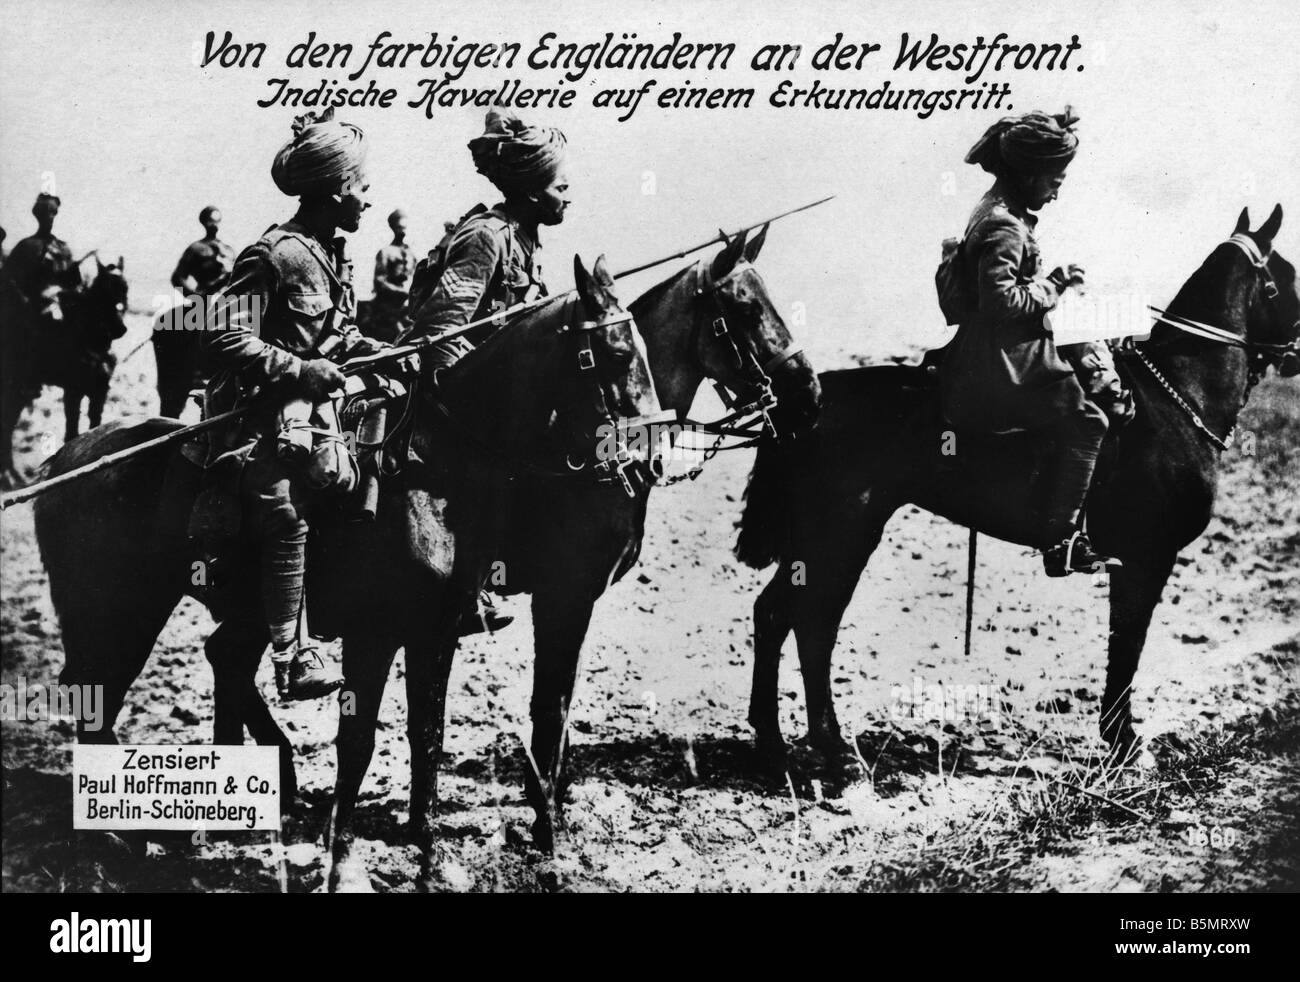 1914 18 18 1914 L'histoire de la Première Guerre mondiale, la cavalerie indien sur une mission de reconnaissance sur le front de l'Ouest Photo Banque D'Images